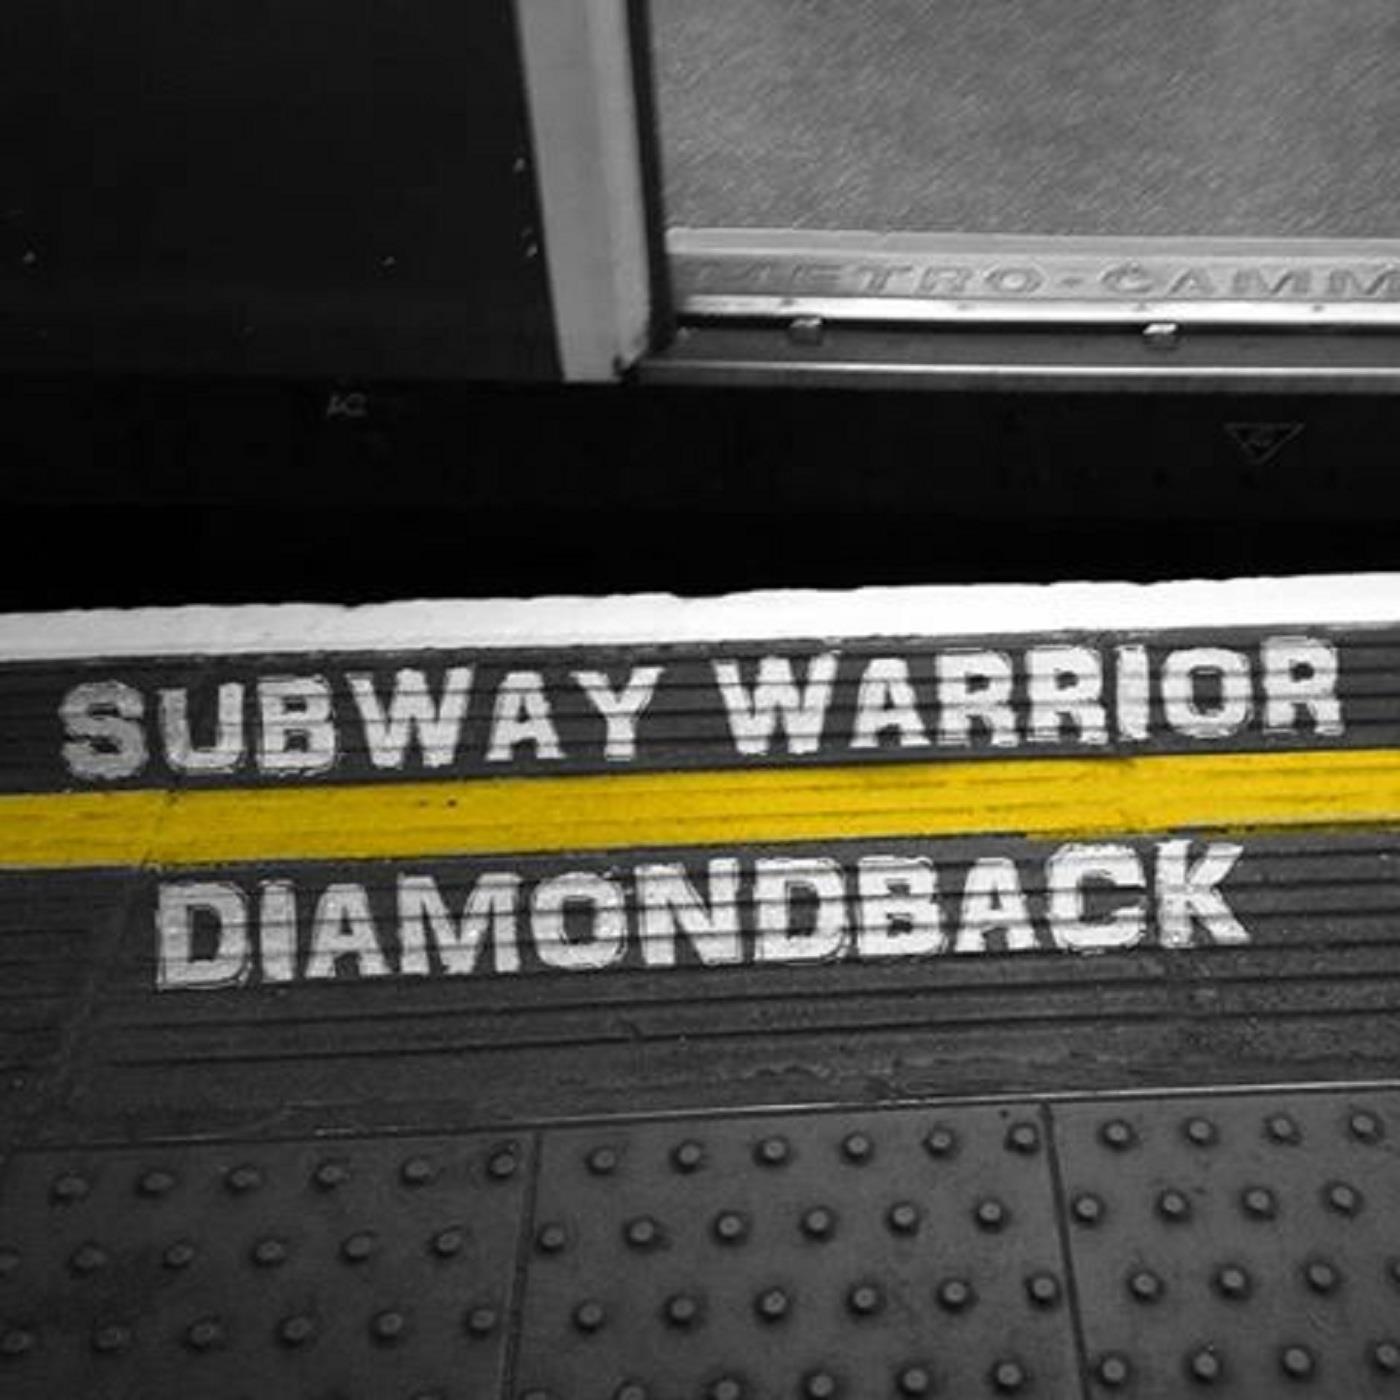 Subway warrior